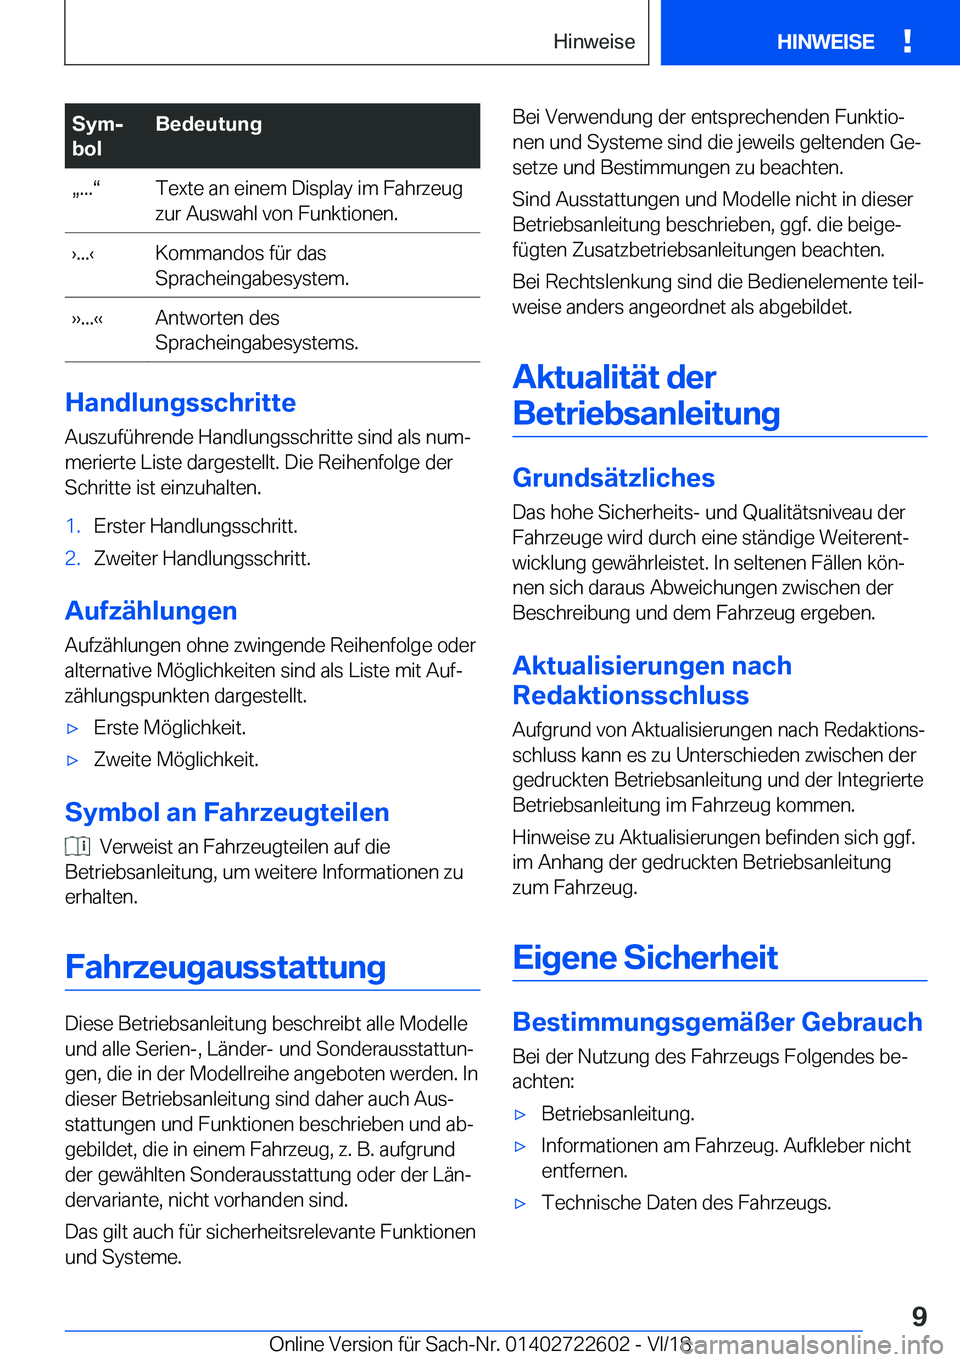 BMW 5 SERIES 2019  Betriebsanleitungen (in German) �S�y�mj
�b�o�l�B�e�d�e�u�t�u�n�gx�.�.�.v�T�e�x�t�e��a�n��e�i�n�e�m��D�i�s�p�l�a�y��i�m��F�a�h�r�z�e�u�g
�z�u�r��A�u�s�w�a�h�l��v�o�n��F�u�n�k�t�i�o�n�e�n�.